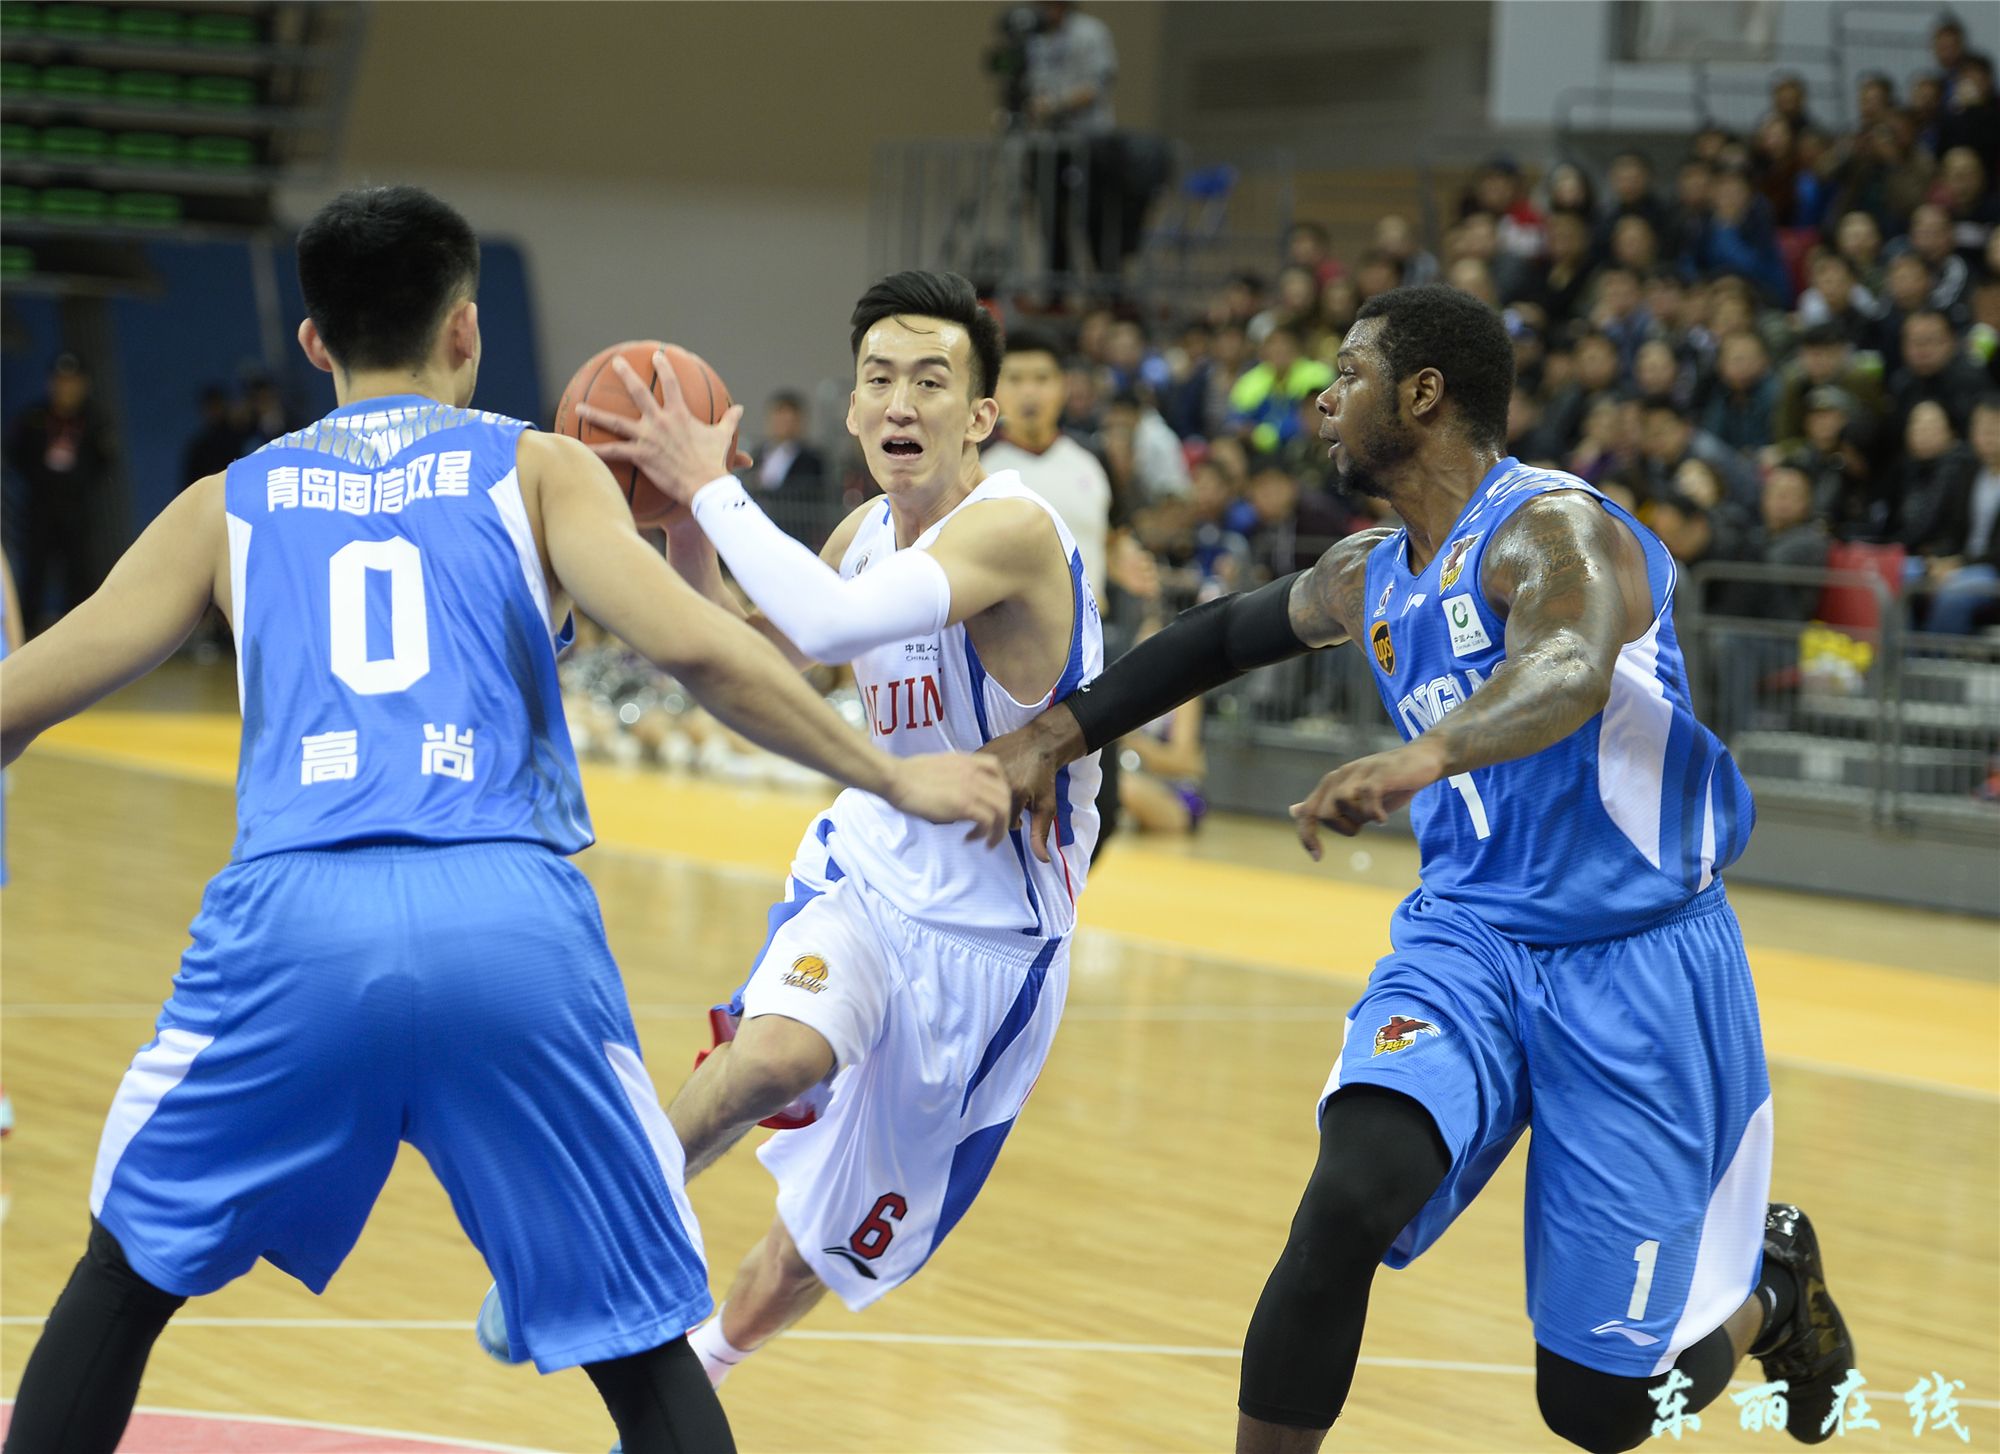 天津荣钢男篮本赛季CBA篮球联赛首场比赛在